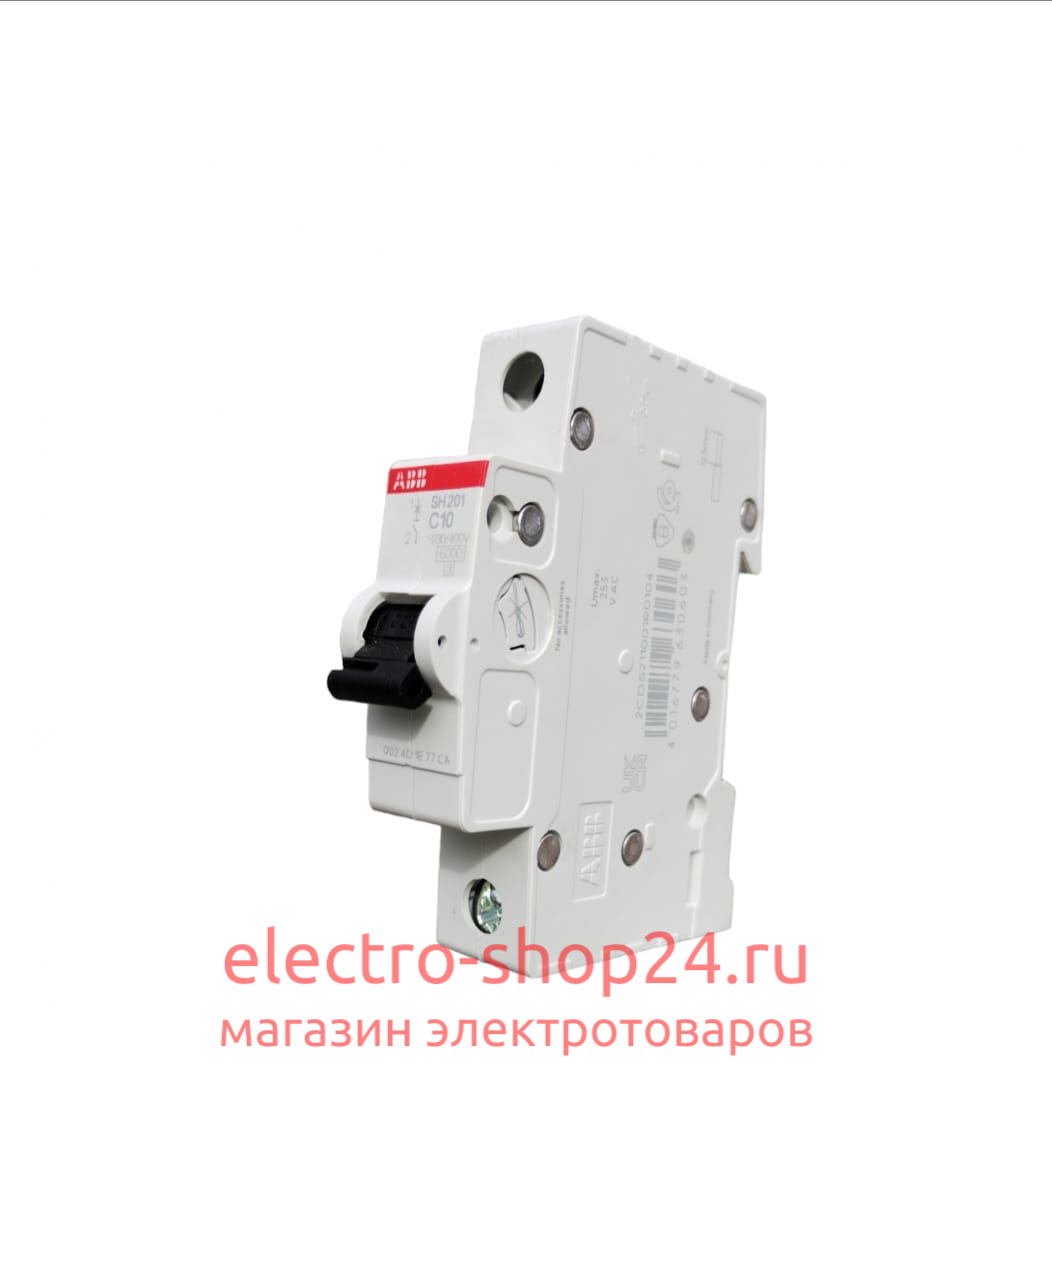 SH201 C10 Автоматический выключатель 1-полюсный 10А 6кА (хар-ка C) ABB 2CDS211001R0104 2CDS211001R0104 - магазин электротехники Electroshop